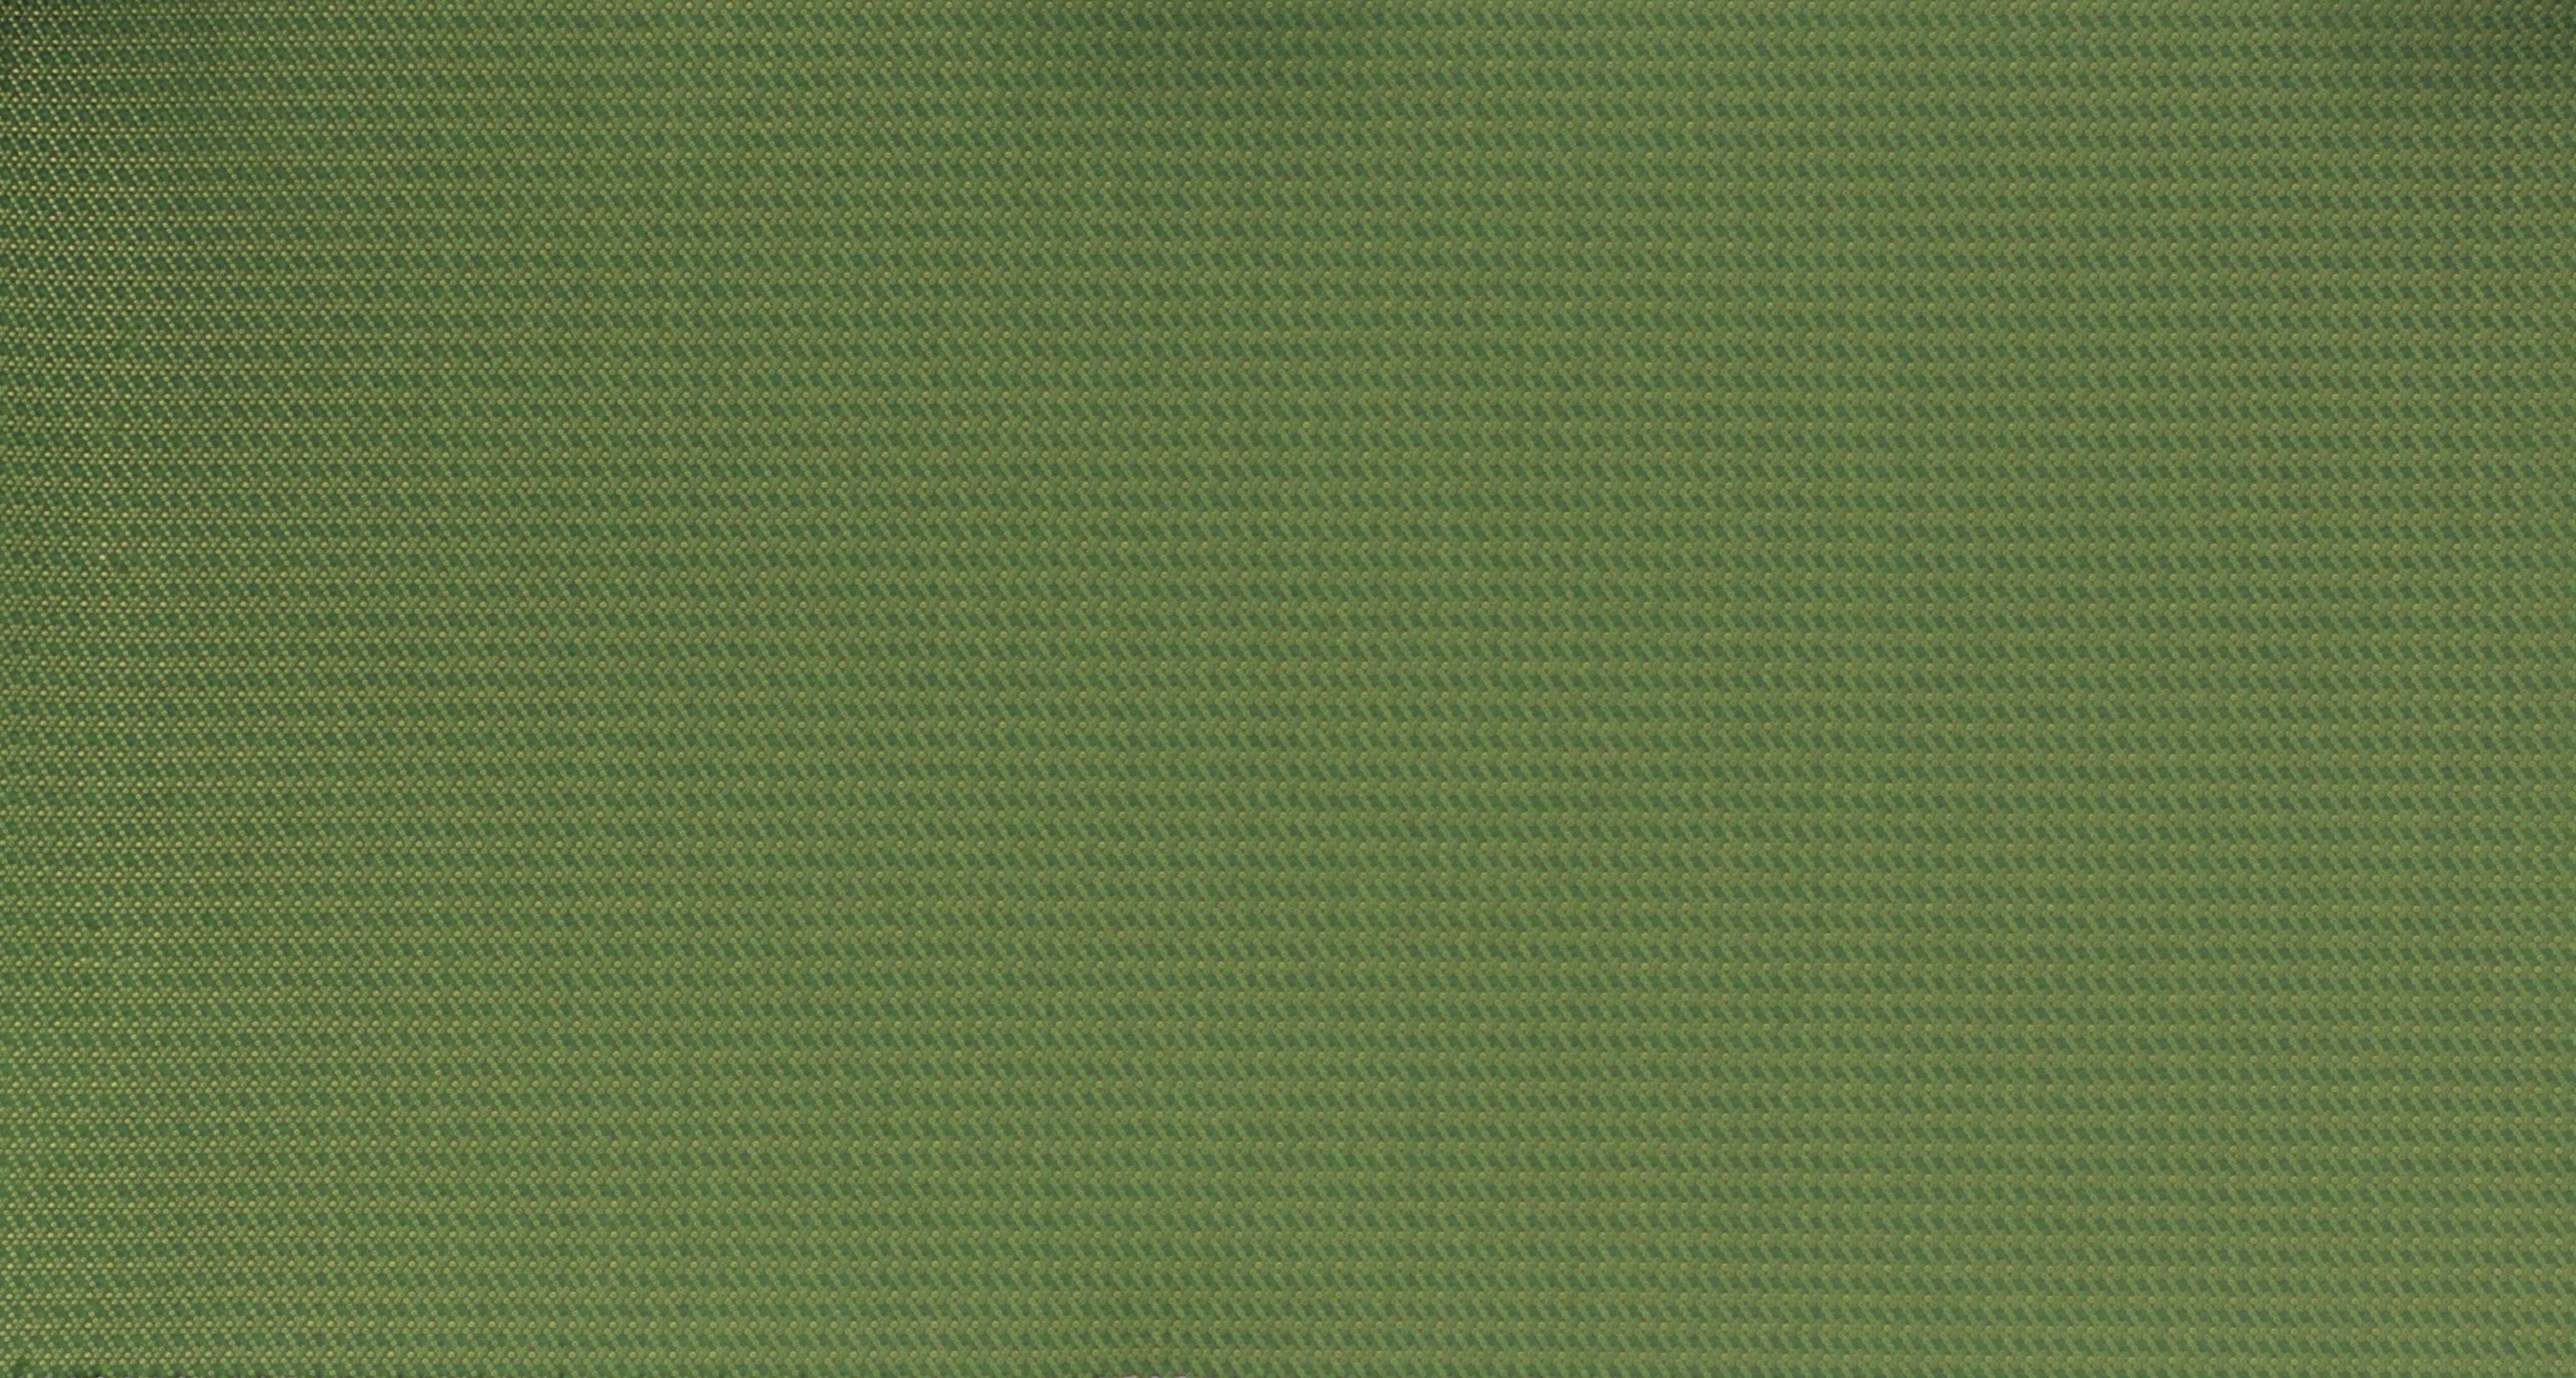 Хаки описание. Ткань хаки армейский (RAL-7008). Цвет хаки зеленый болотный. Защитный цвет. Зеленая ткань.